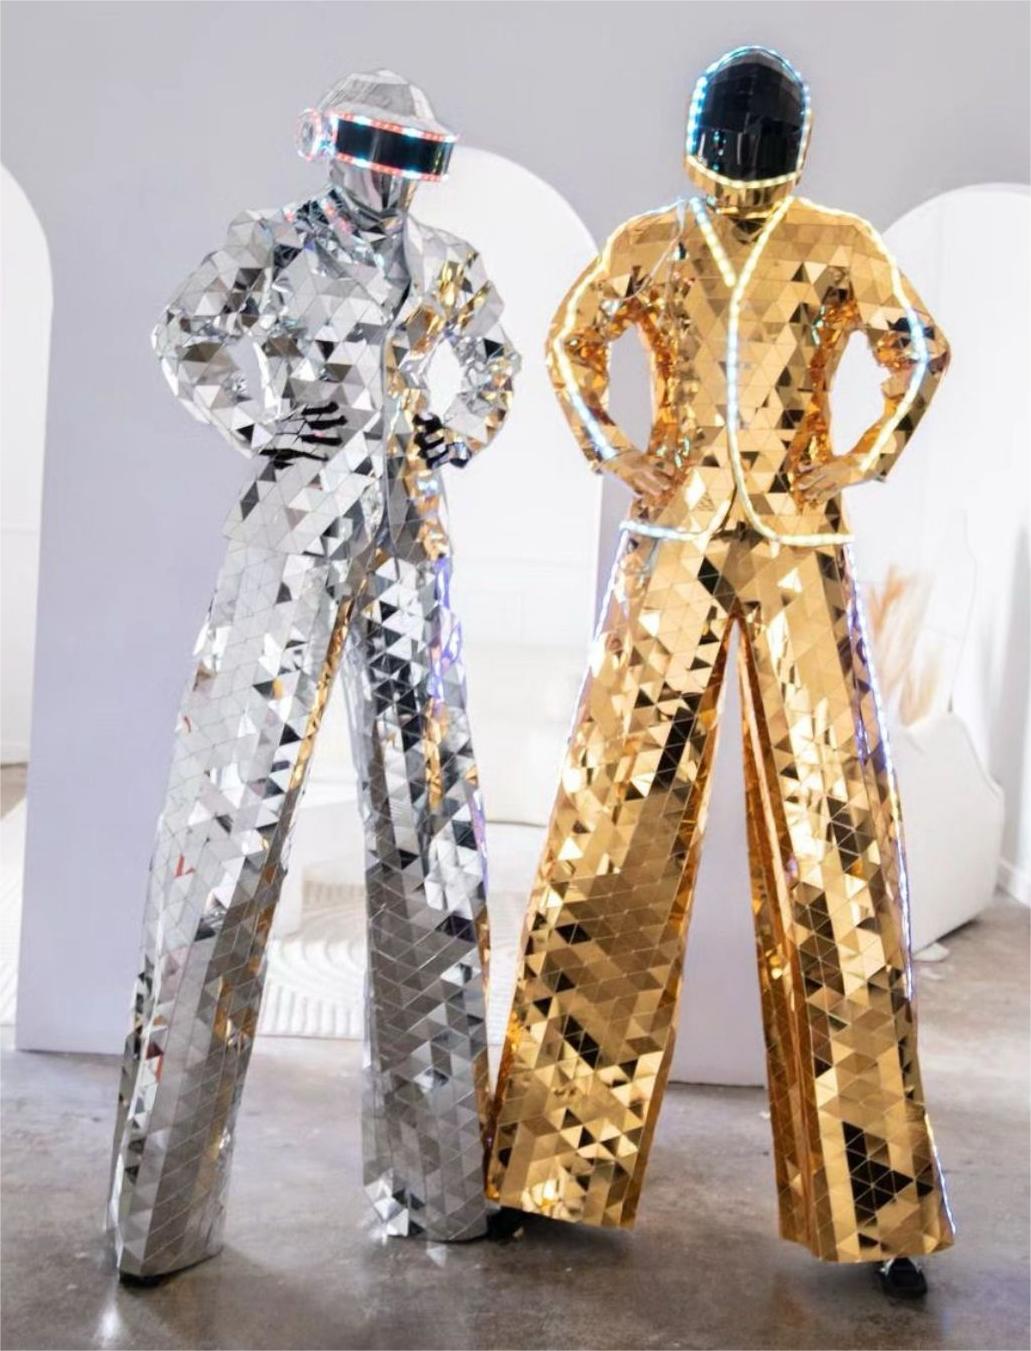 LED mirror stilt walker costumes